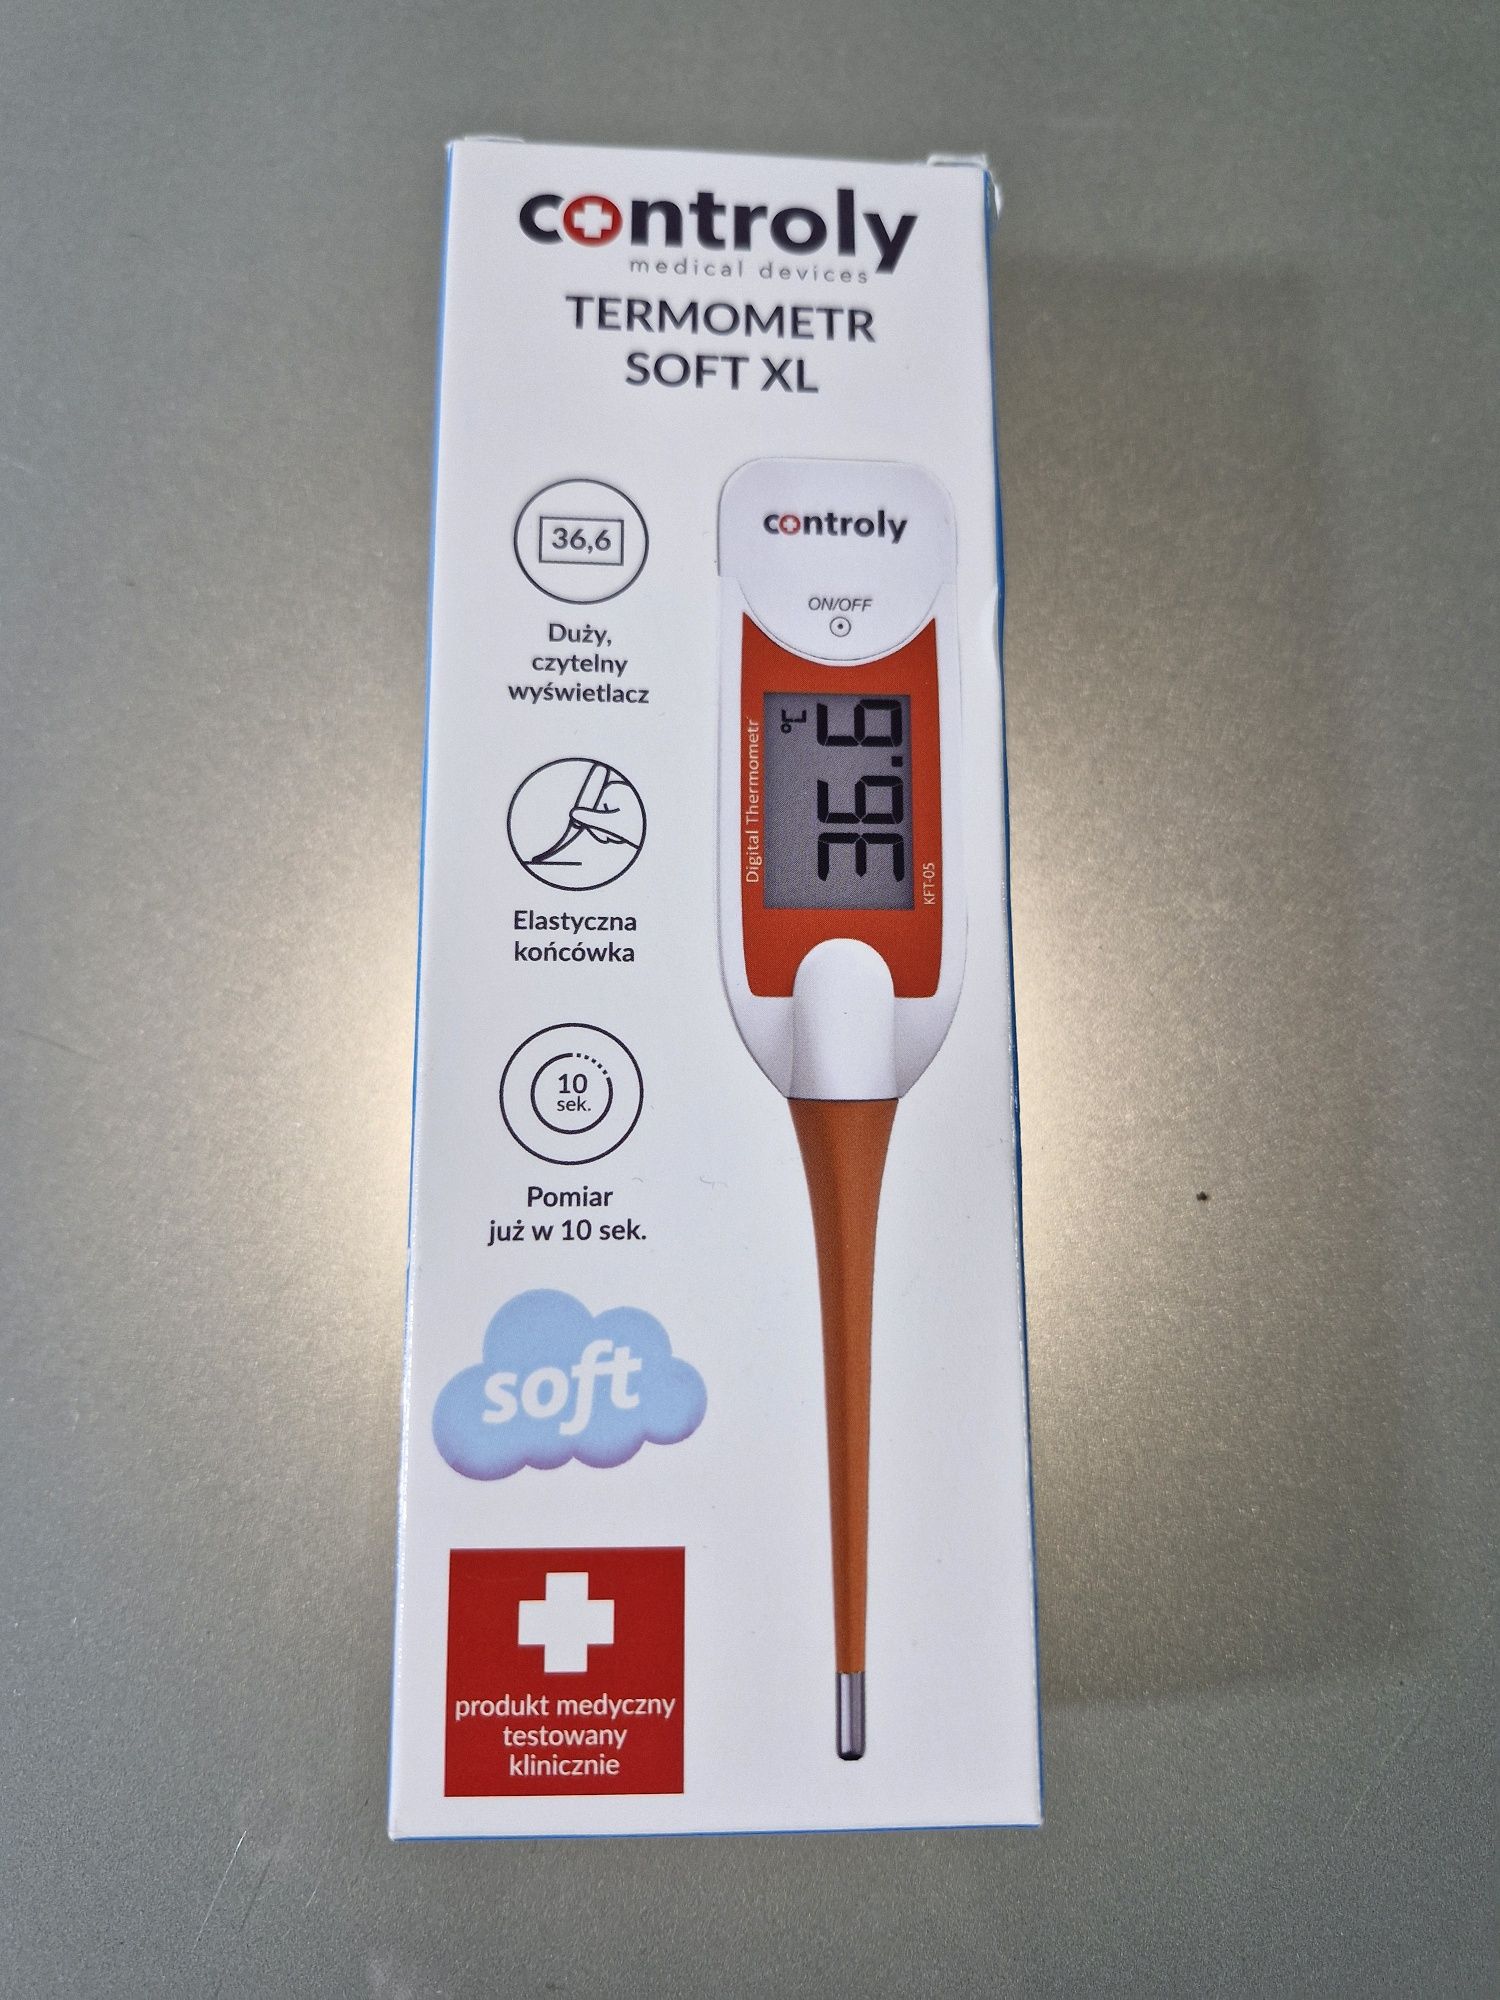 Termometr Duży Czytelny Wyświetlacz Controly Soft XL